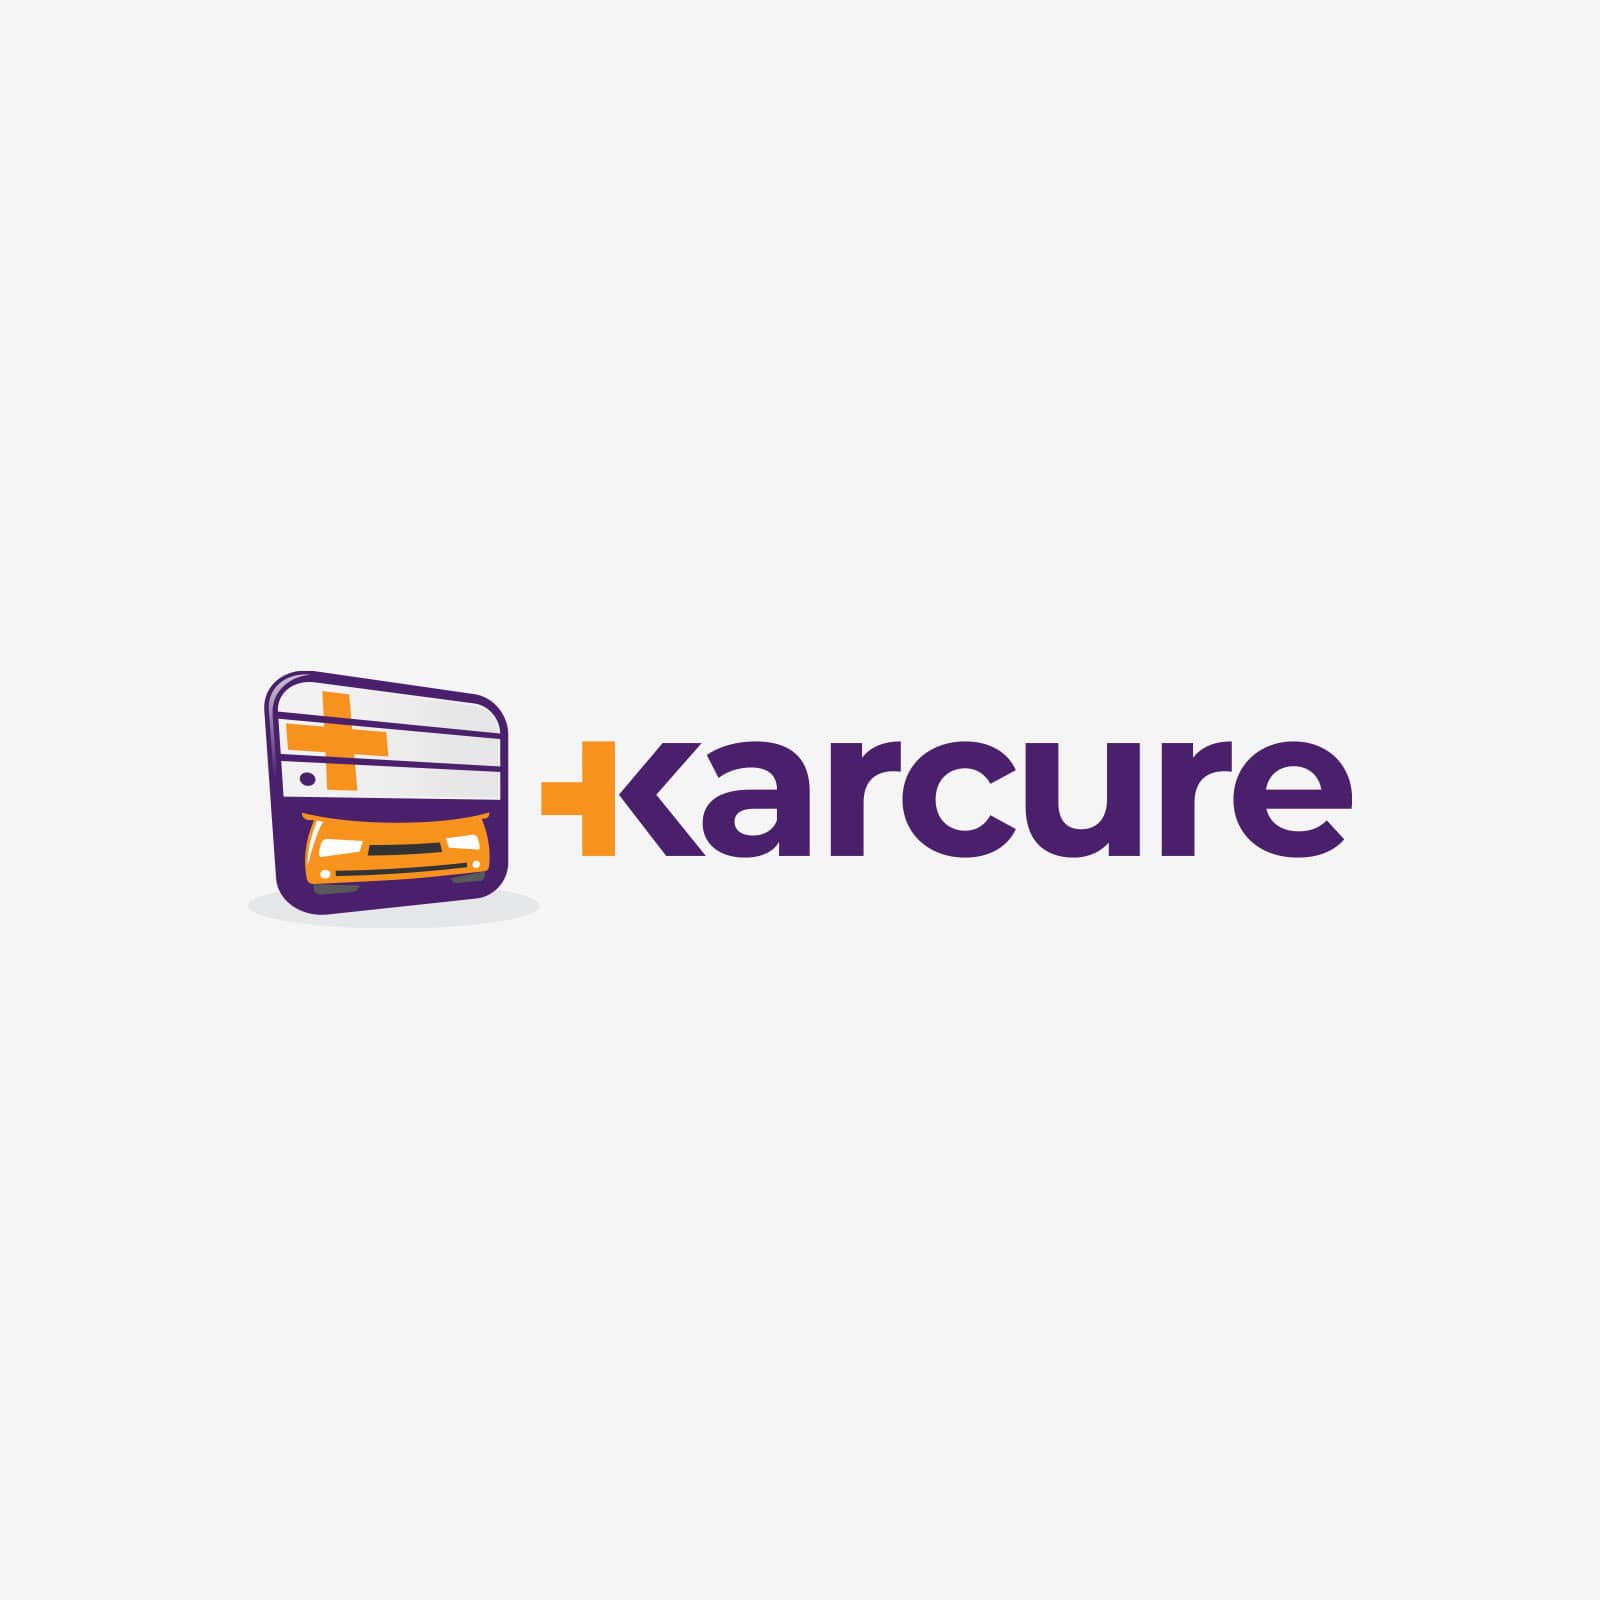 eximdesign_karcure_1.jpg